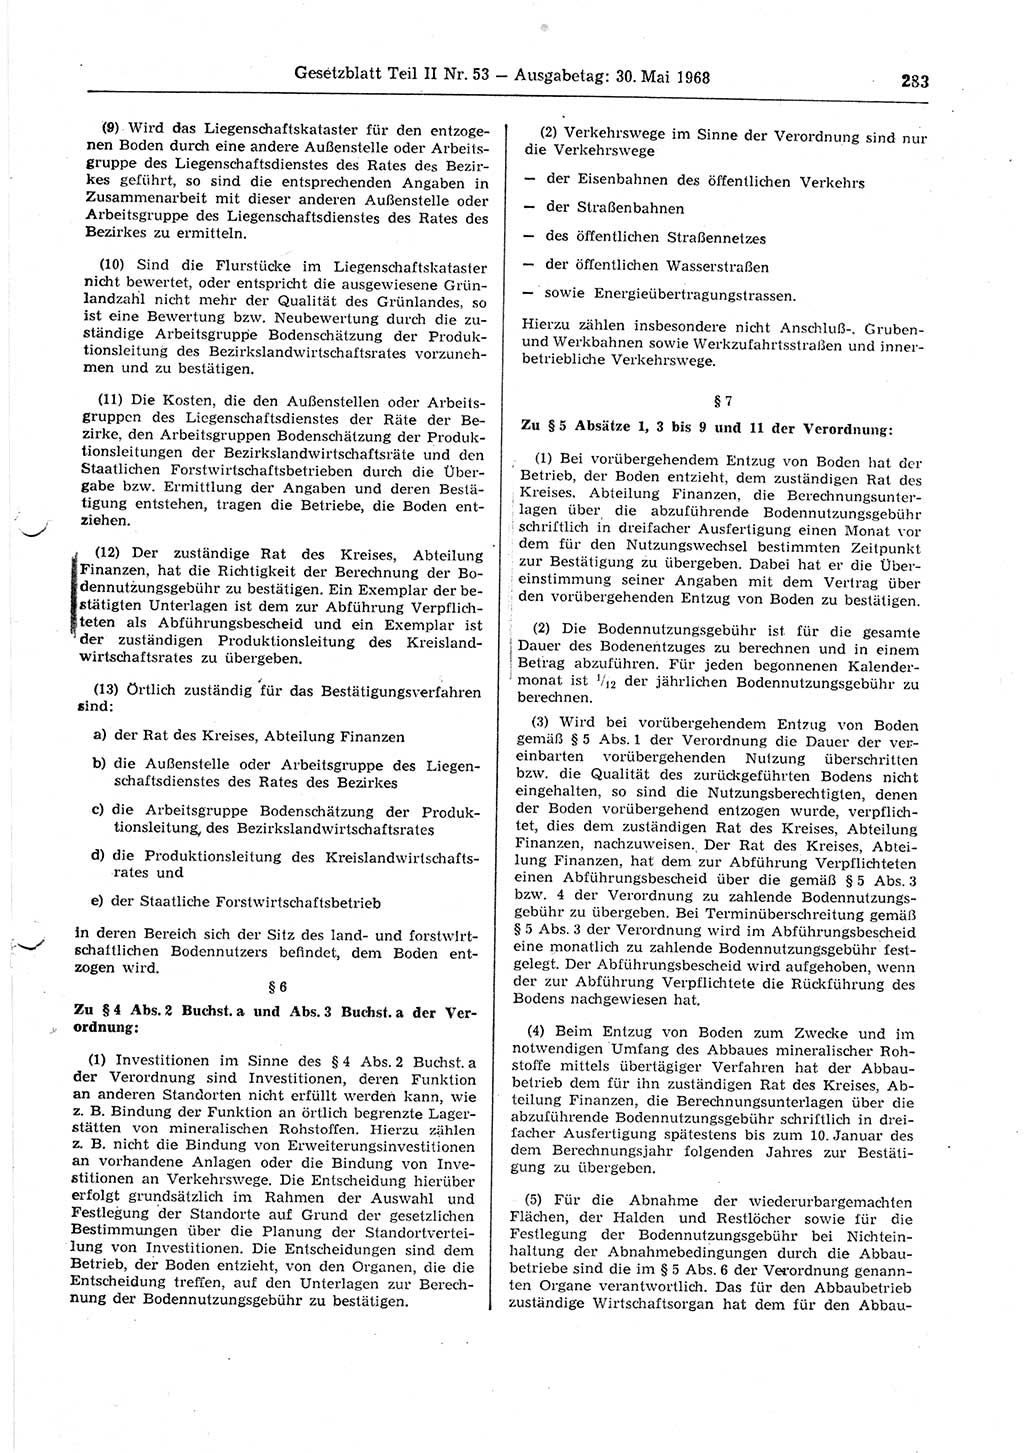 Gesetzblatt (GBl.) der Deutschen Demokratischen Republik (DDR) Teil ⅠⅠ 1968, Seite 283 (GBl. DDR ⅠⅠ 1968, S. 283)